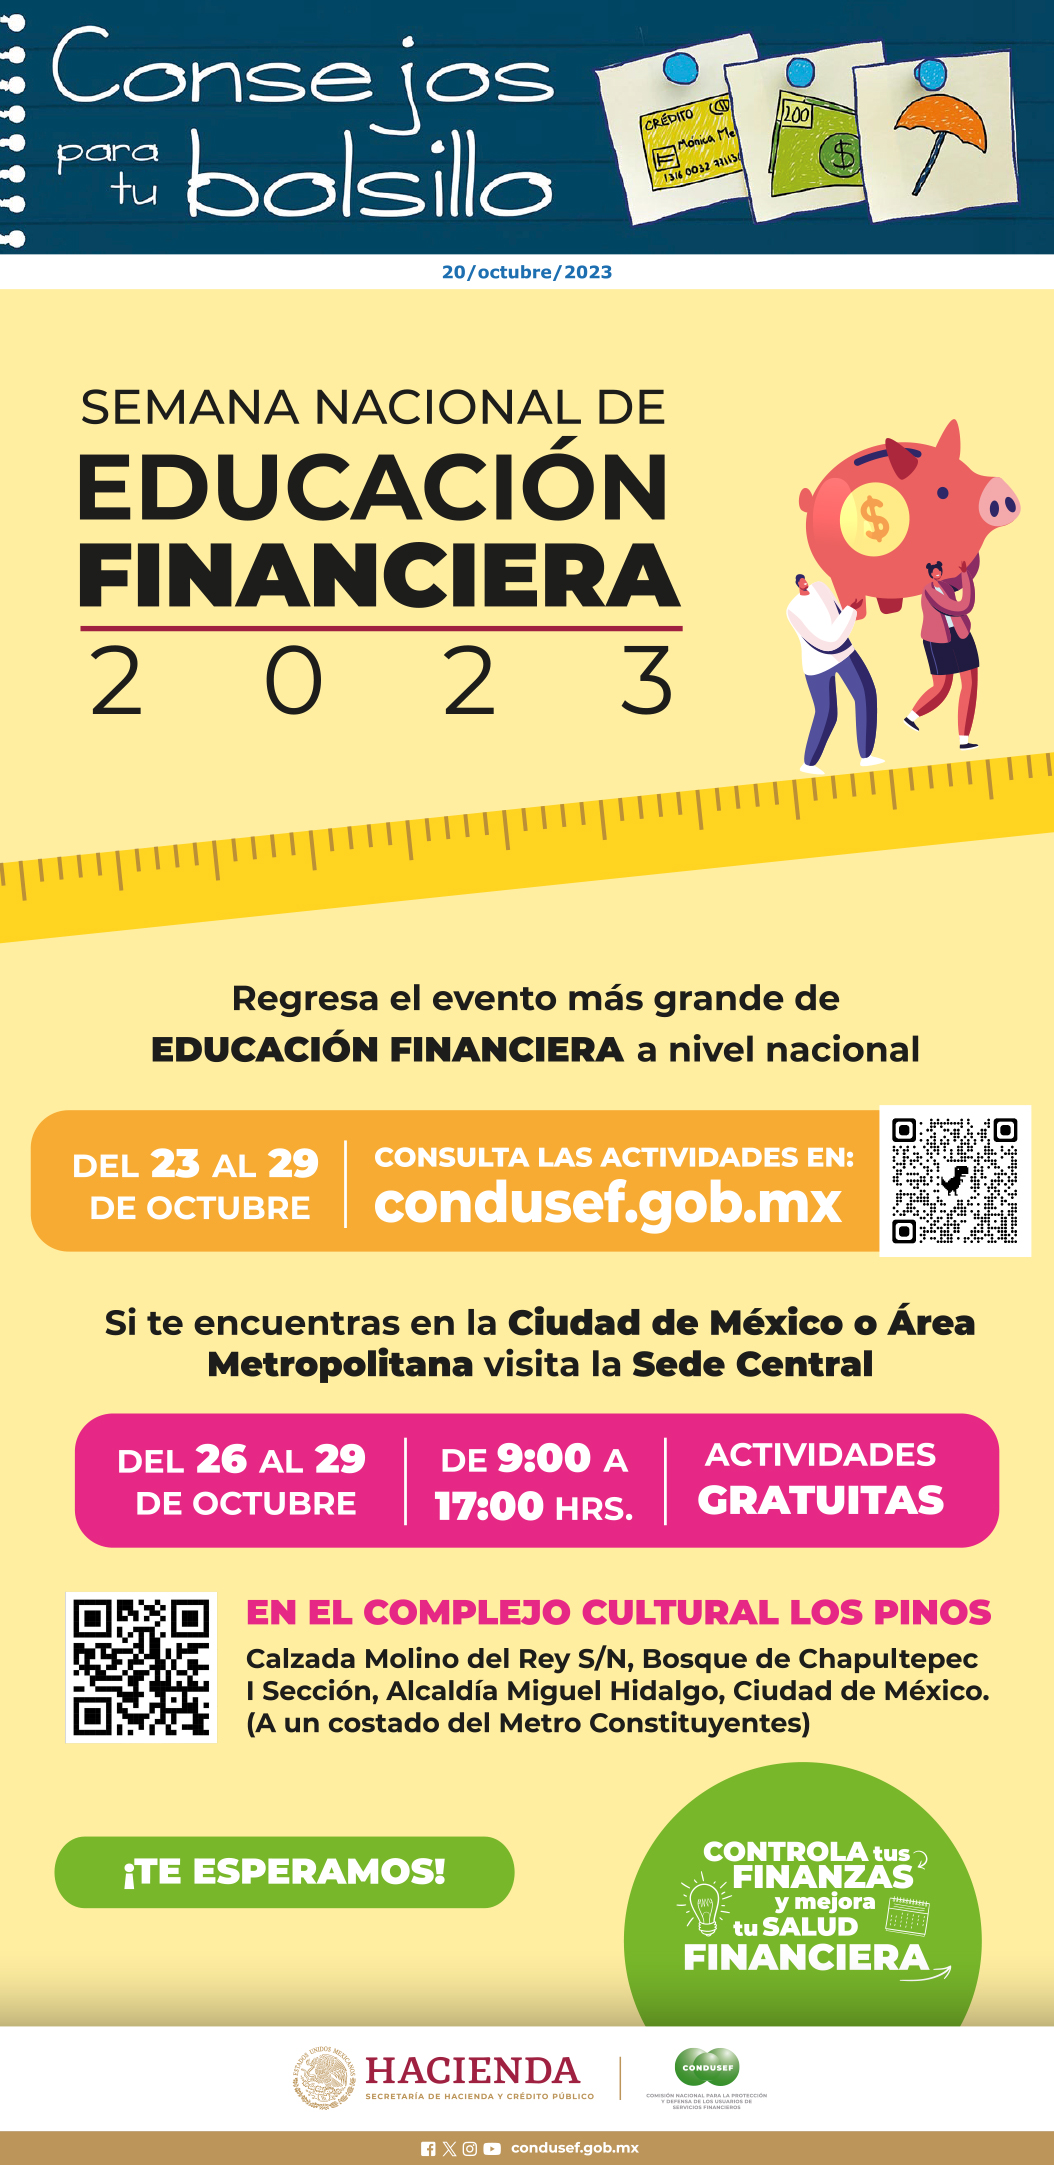 Semana Educación Financiera CONDUSEF 2023 